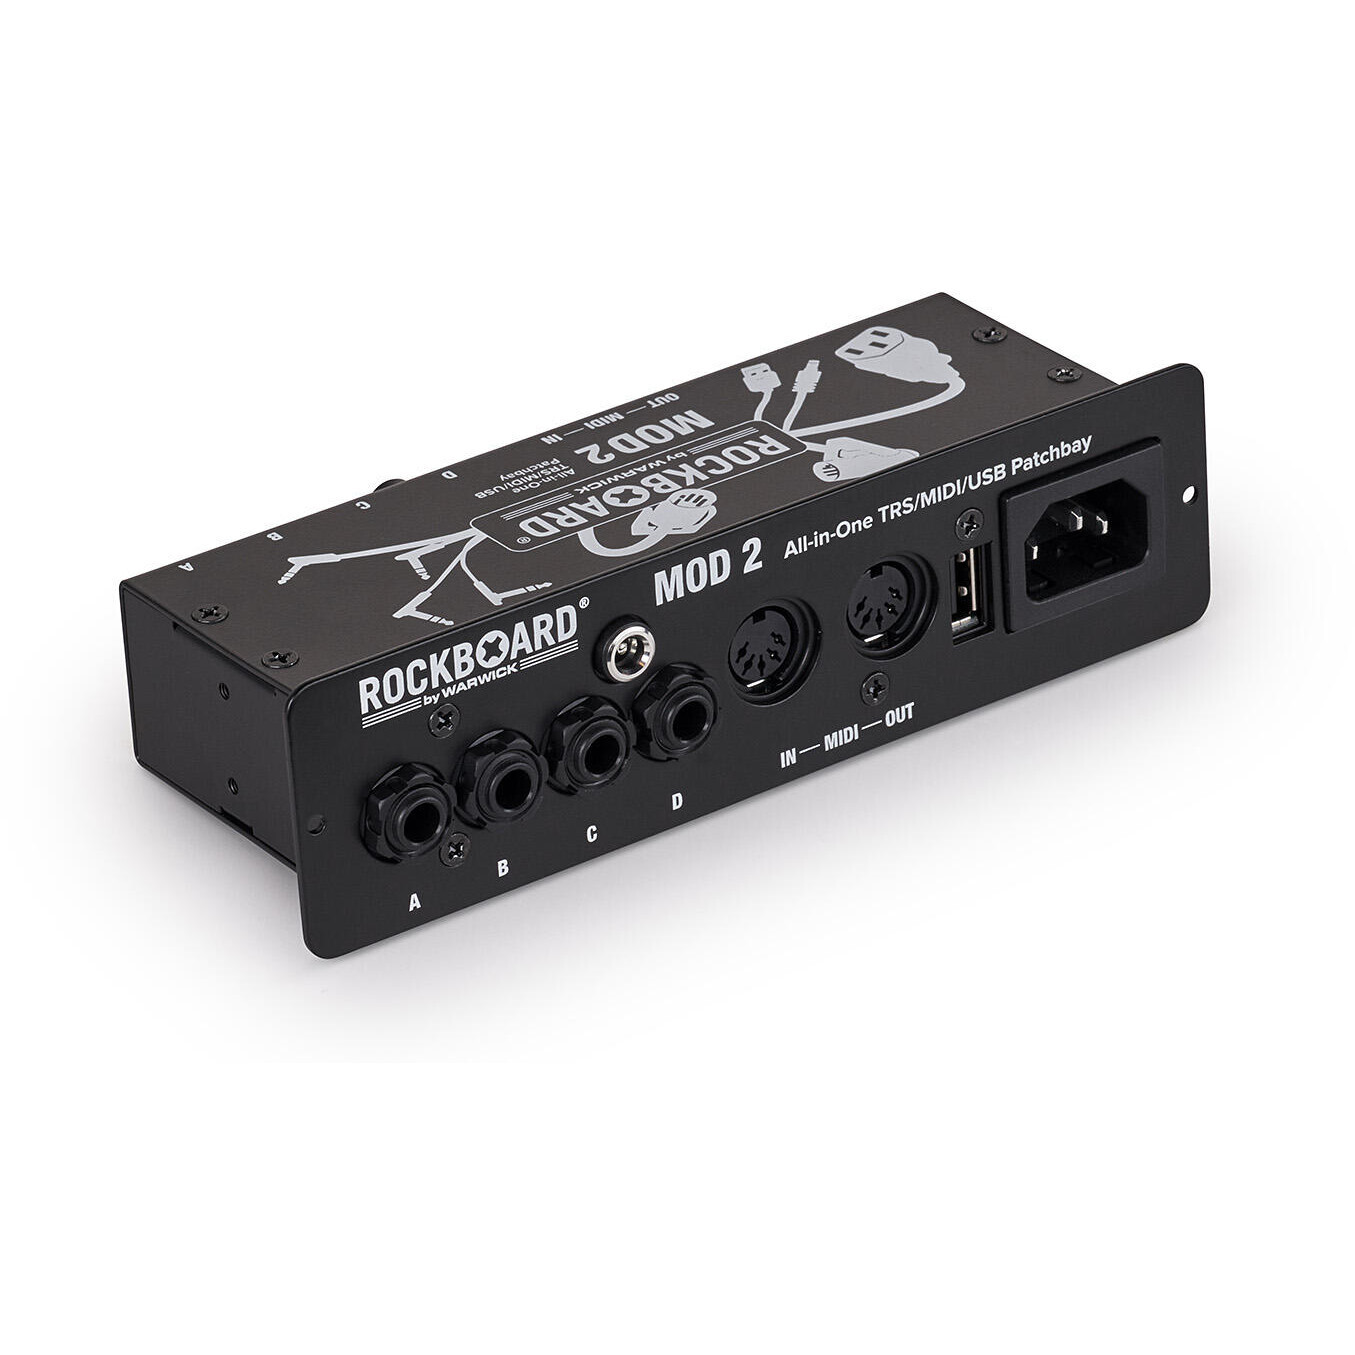 Rockboard MOD 2 V2 - All-in-One TRS, Midi & USB Patchbay